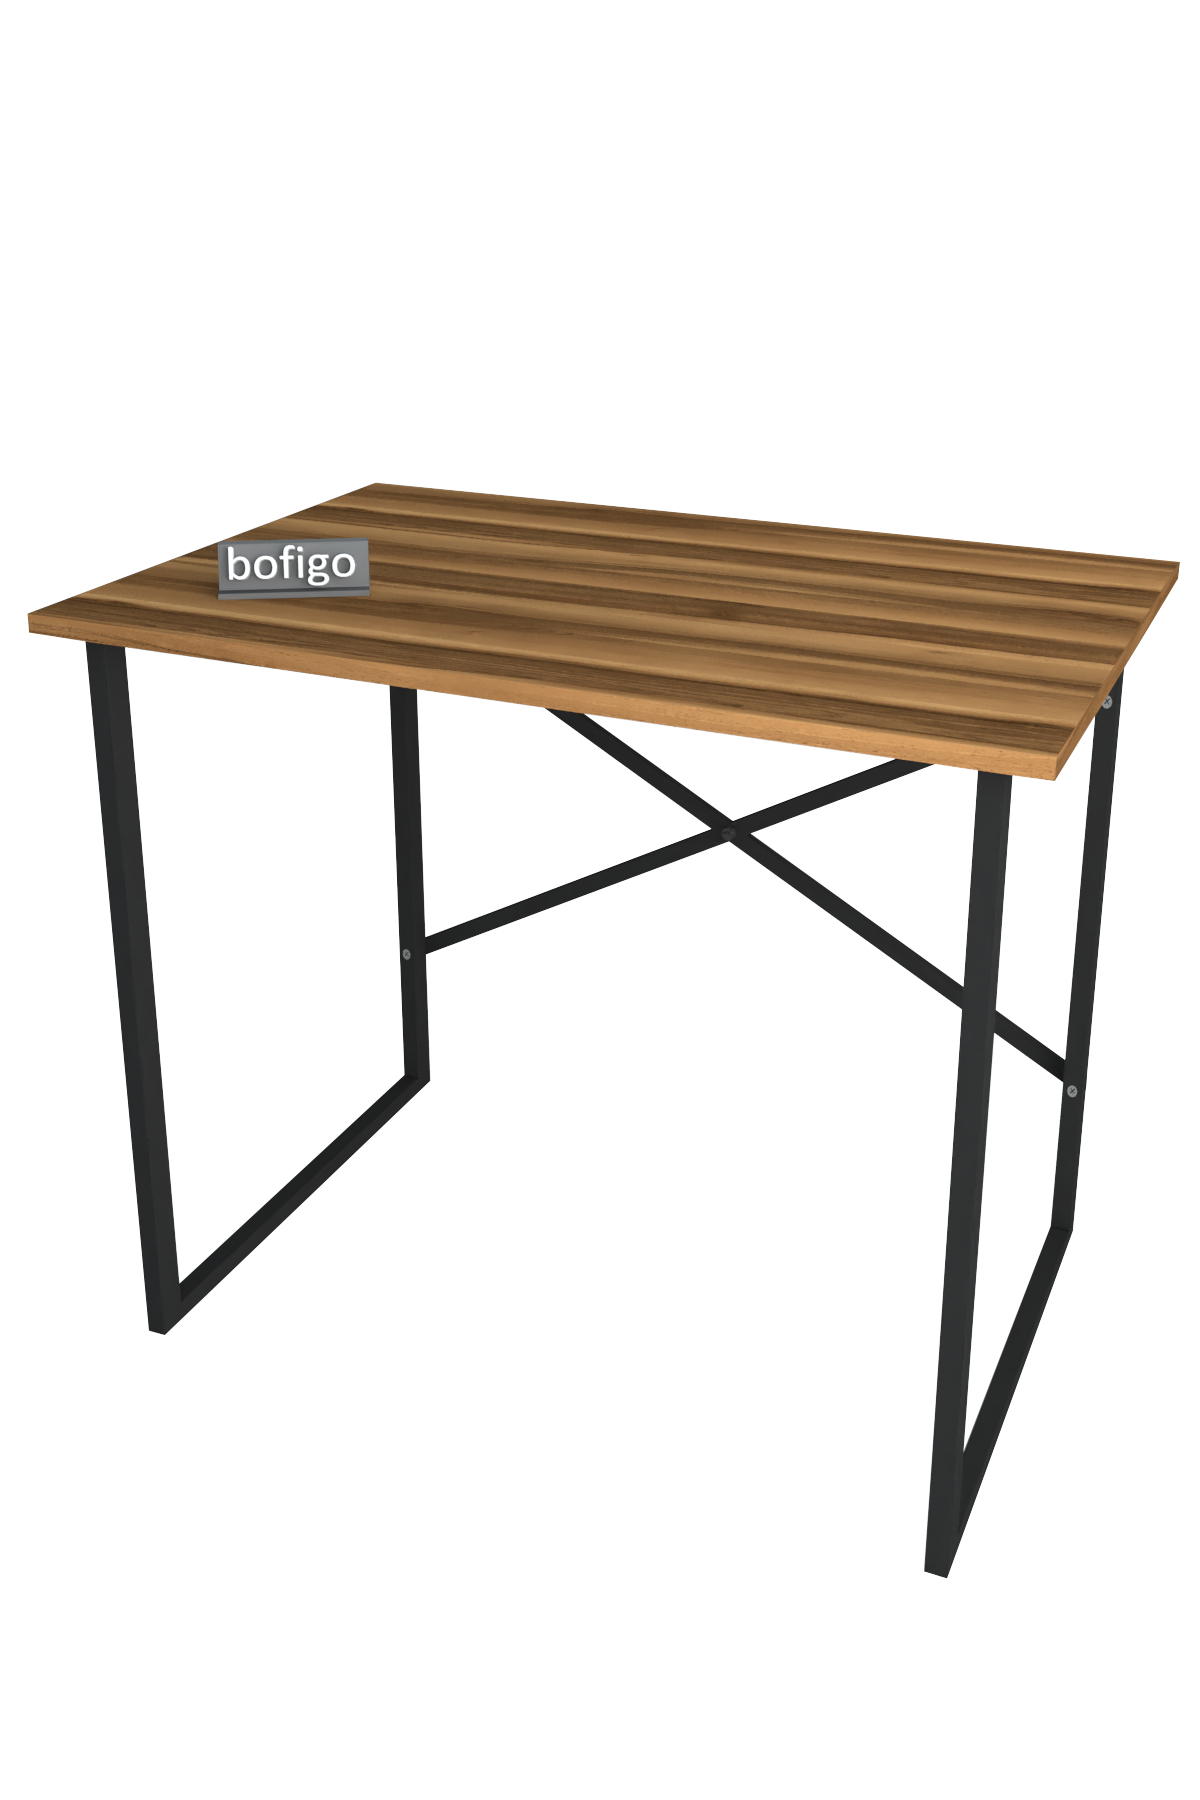 Bofigo Desk 60x90 cm Walnut